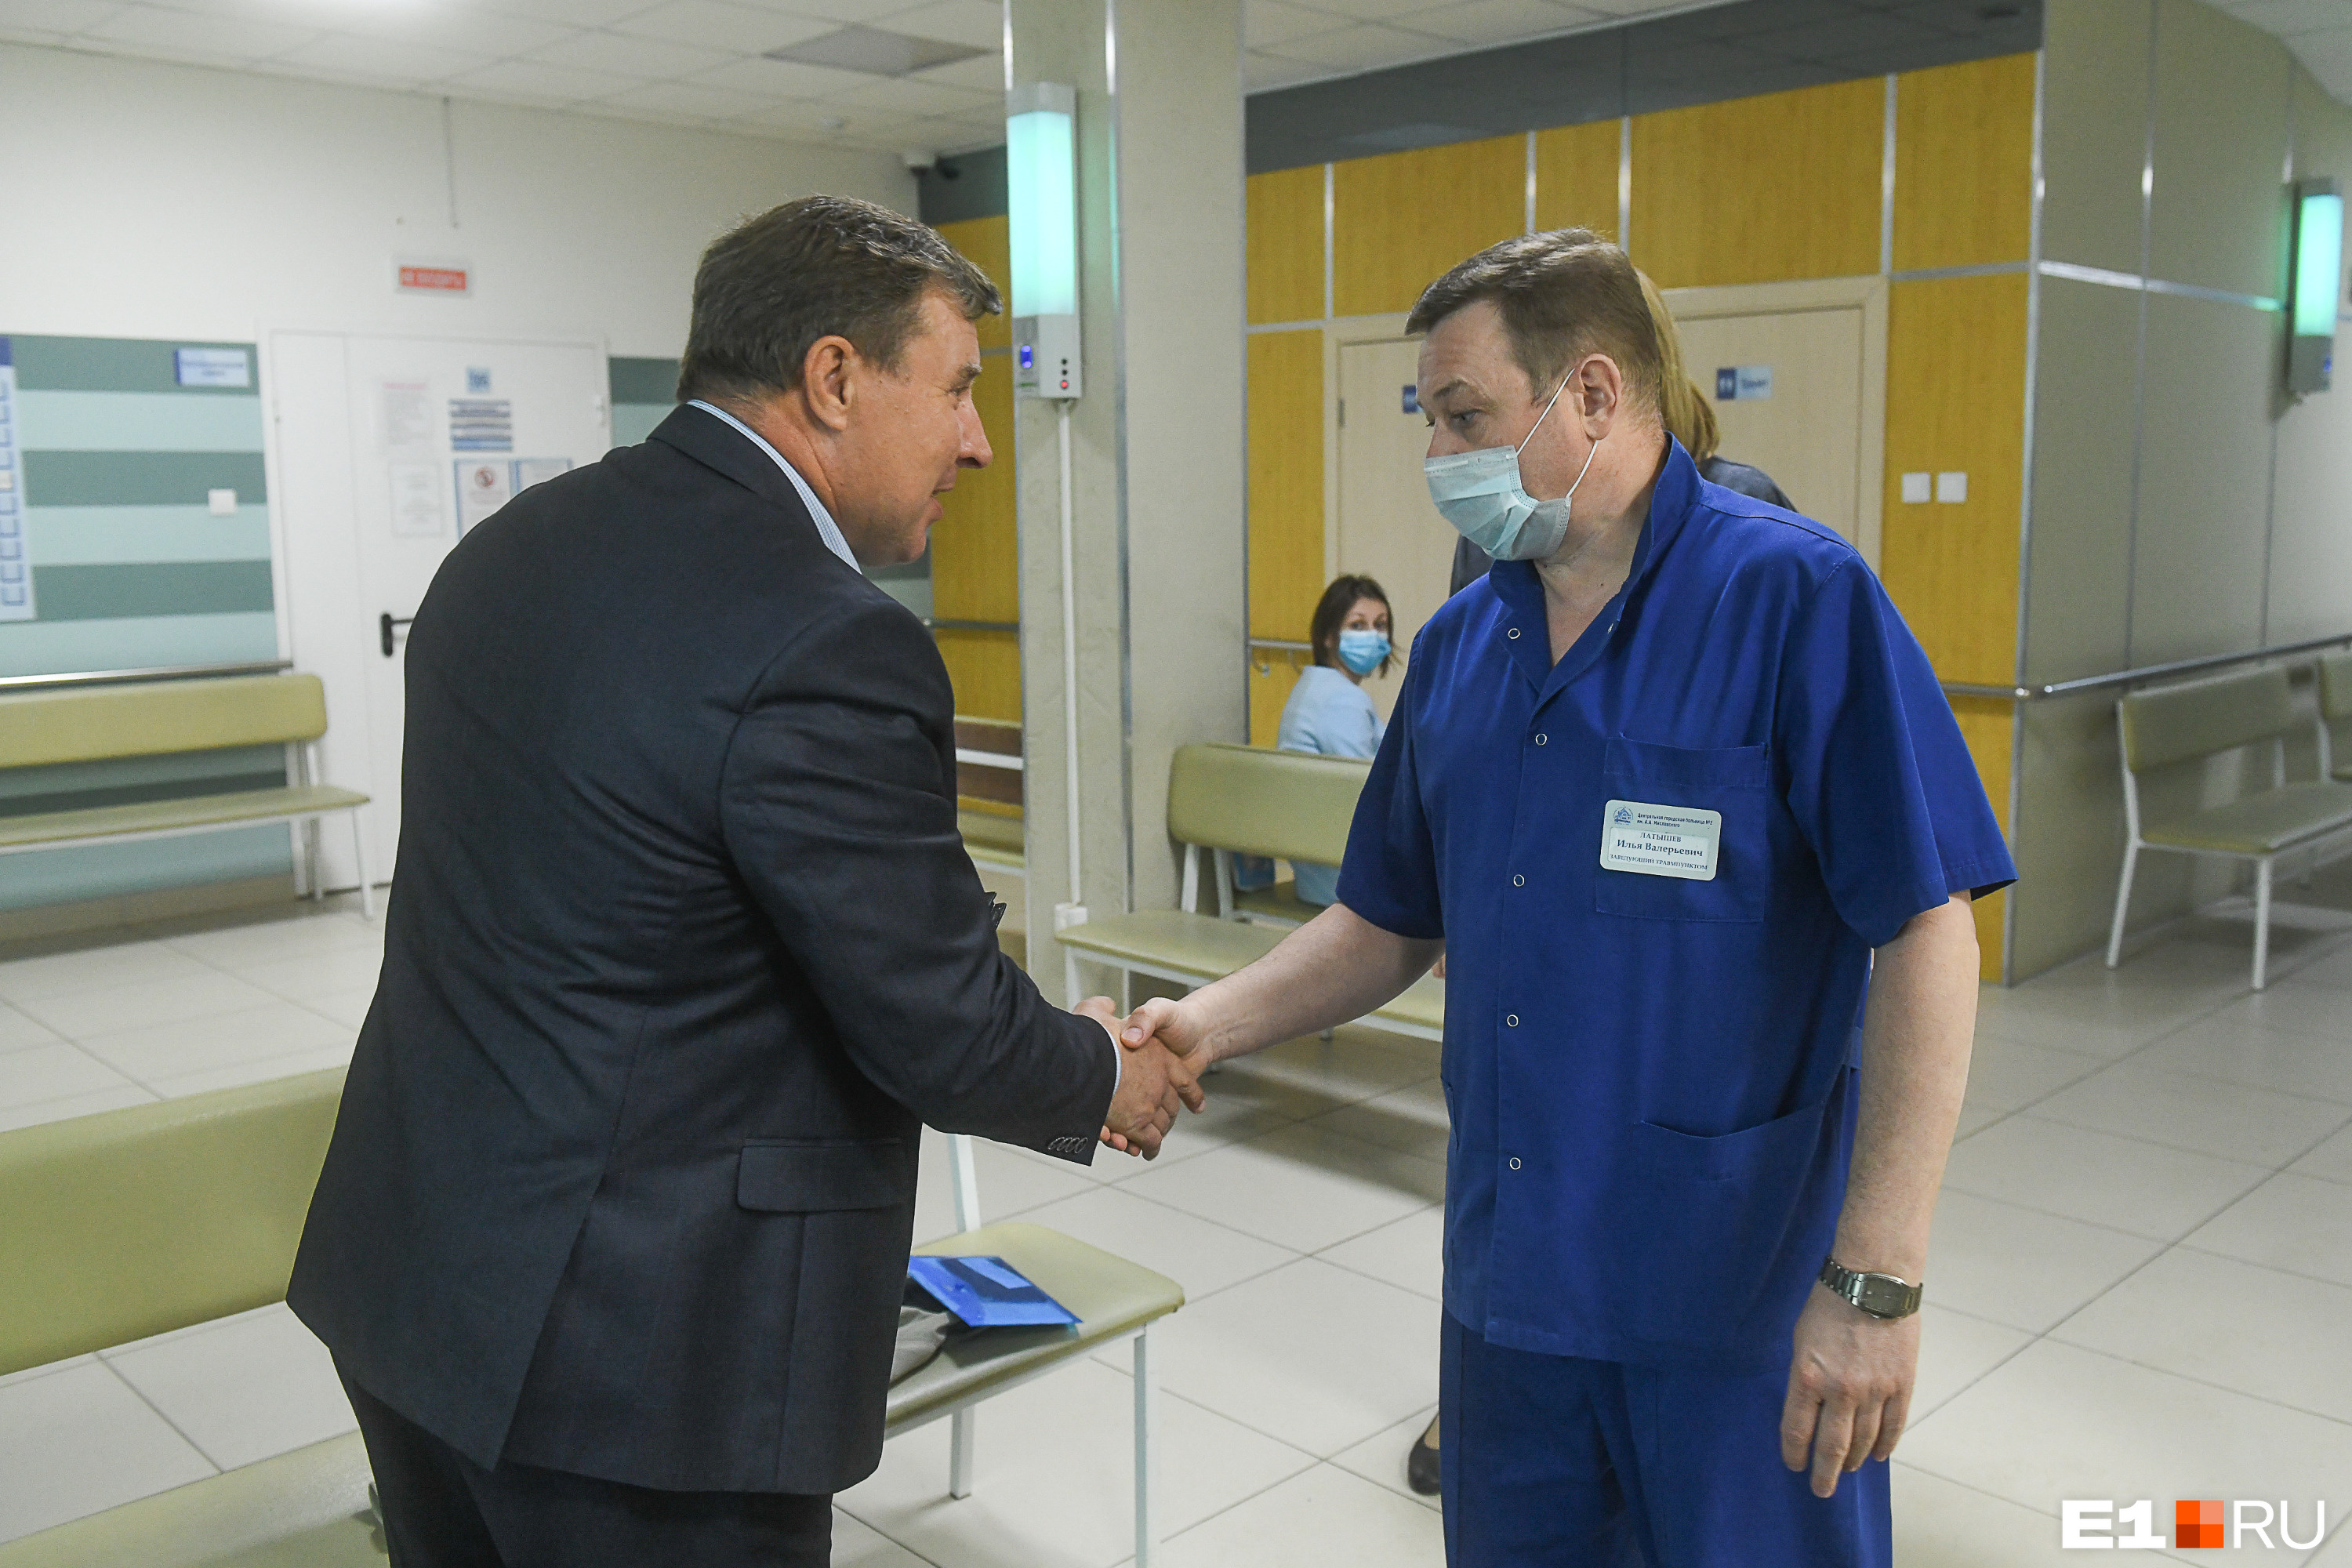 Травматология на Московской принимает пациентов не только из Верх-Исетского района, но и с Широкой Речки, и из Мичуринского 